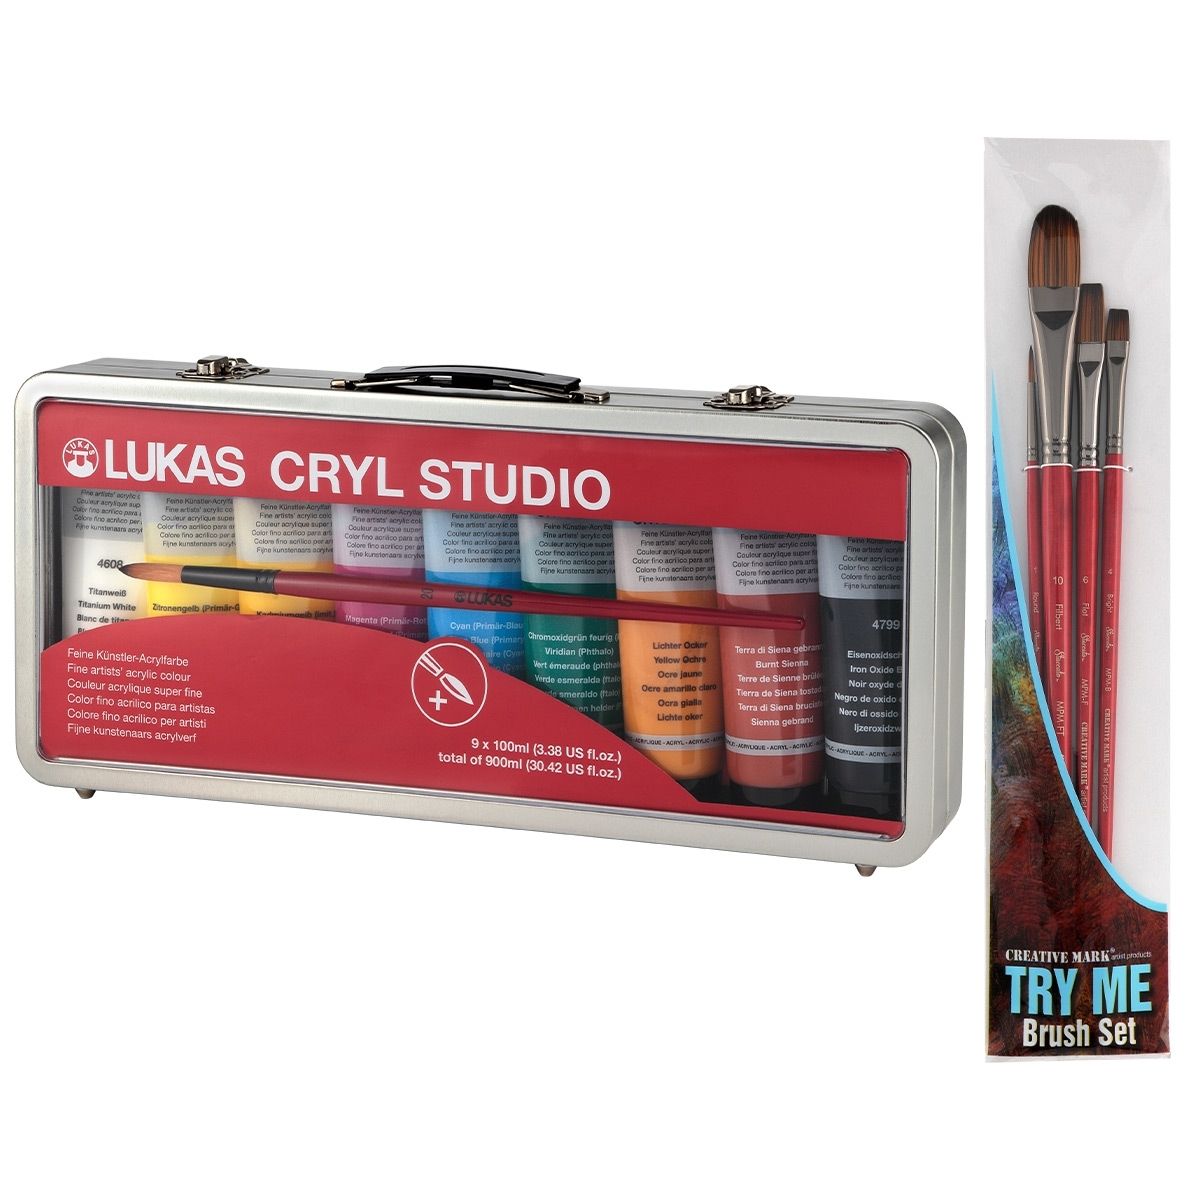 CRYL Studio Acrylics Set of 9, Staccato Brushes Combo Set